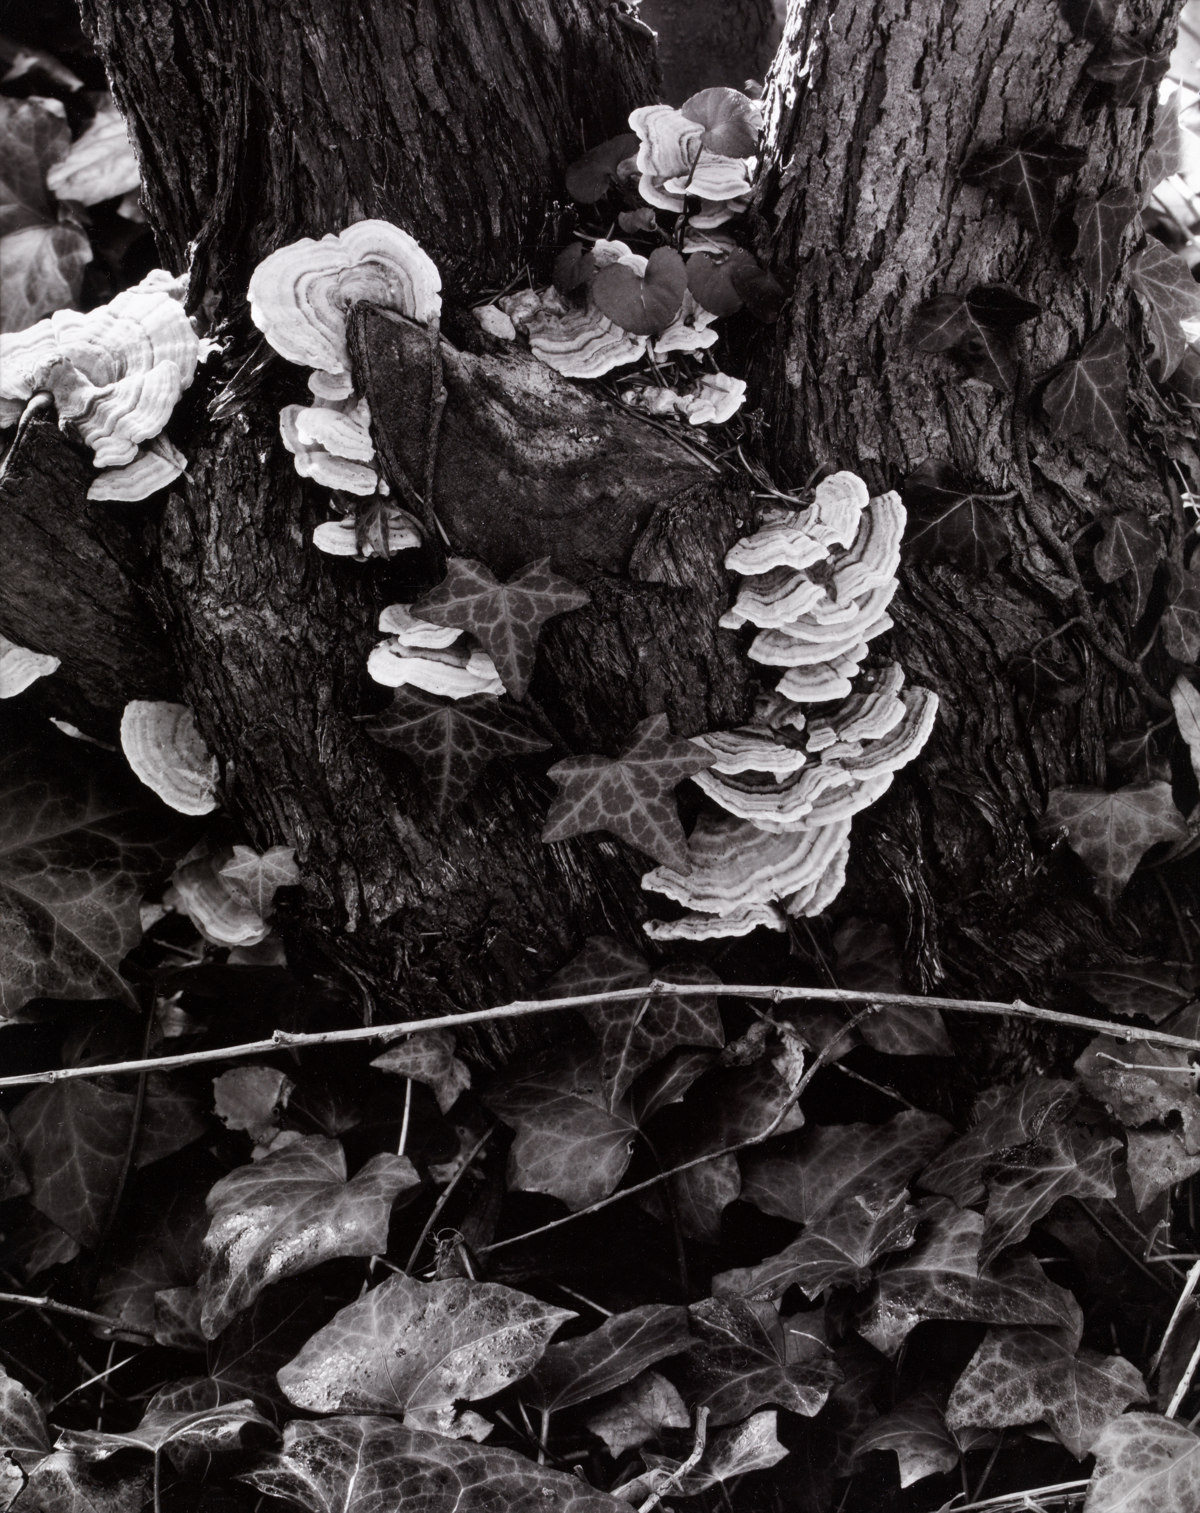 Fungus, The Garden, Orgeval, France [Hongos, El jardín, Orgeval, Francia] © Aperture Foundation, Inc., Paul Strand Archive © COLECCIONES Fundación MAPFRE